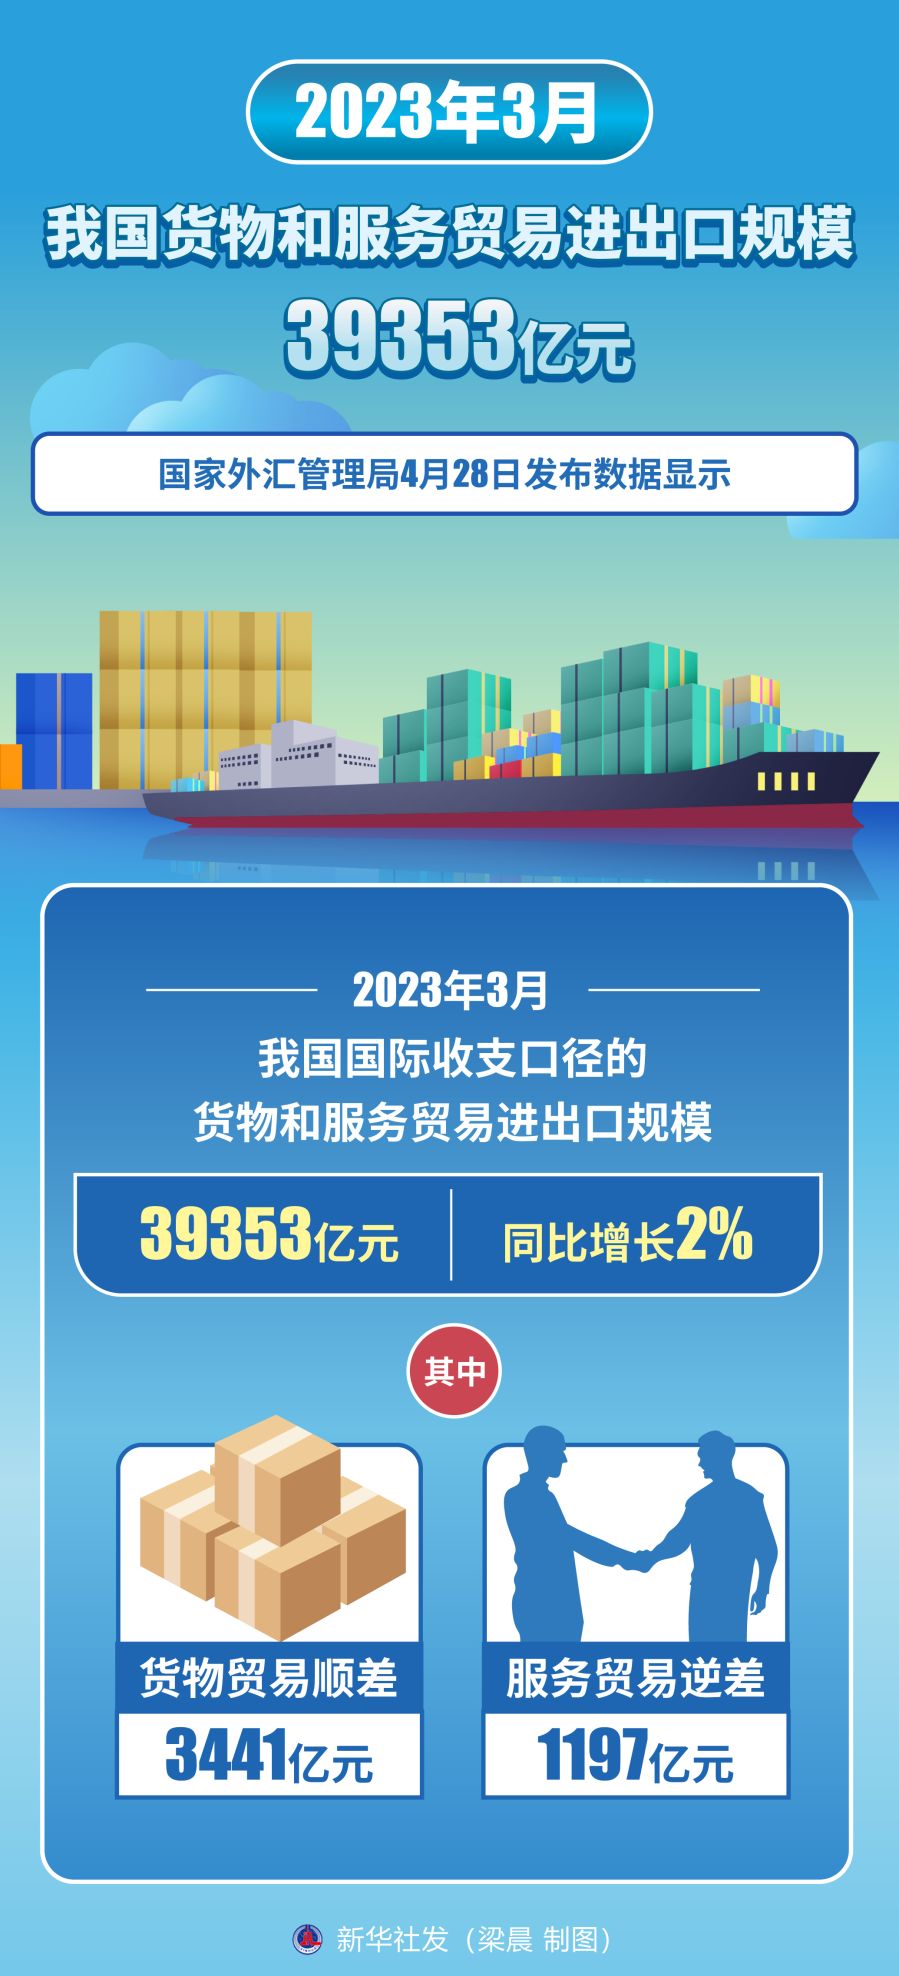 （图表）［经济］2023年3月我国货物和服务贸易进出口规模39353亿元